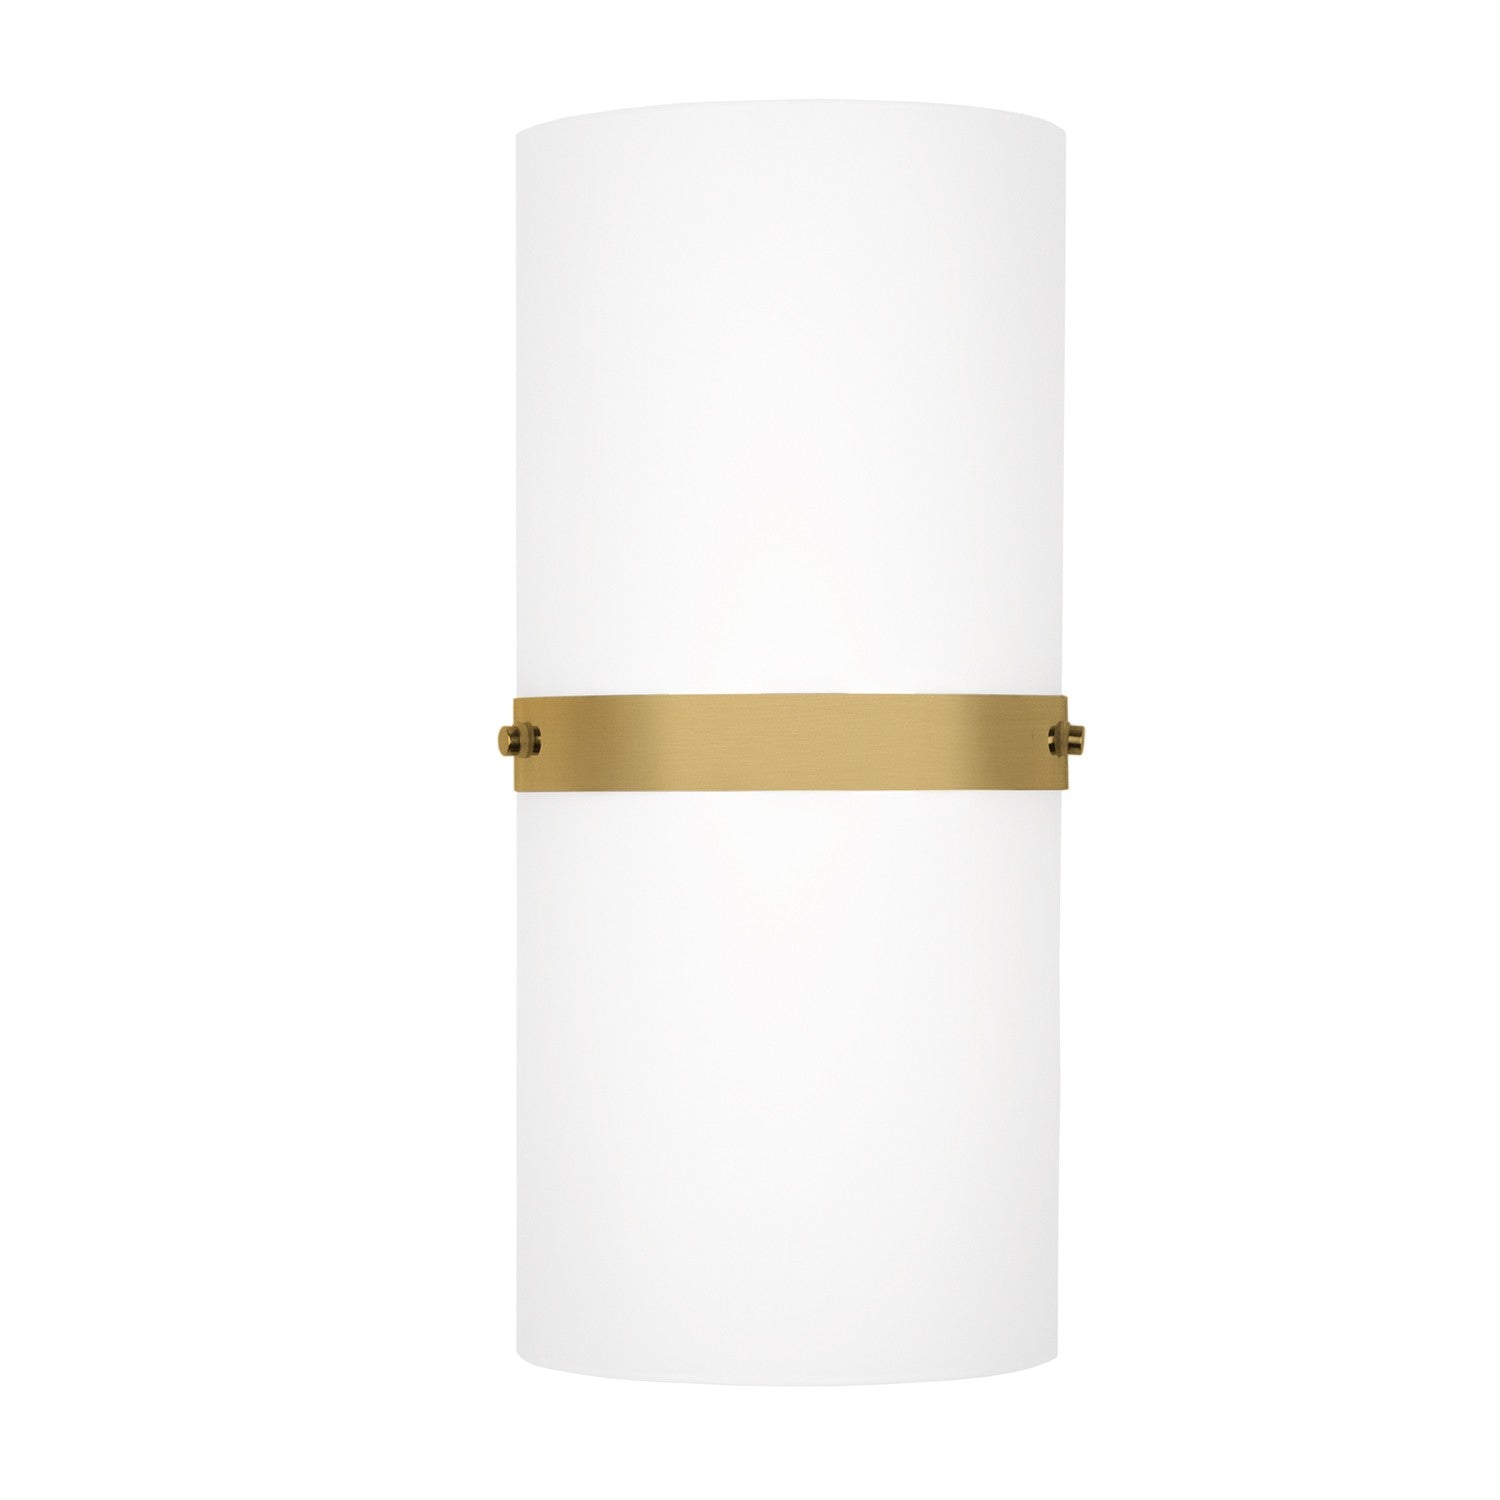 Kuzco Canada - LED Wall Sconce - Harrow - Brushed Gold- Union Lighting Luminaires Decor